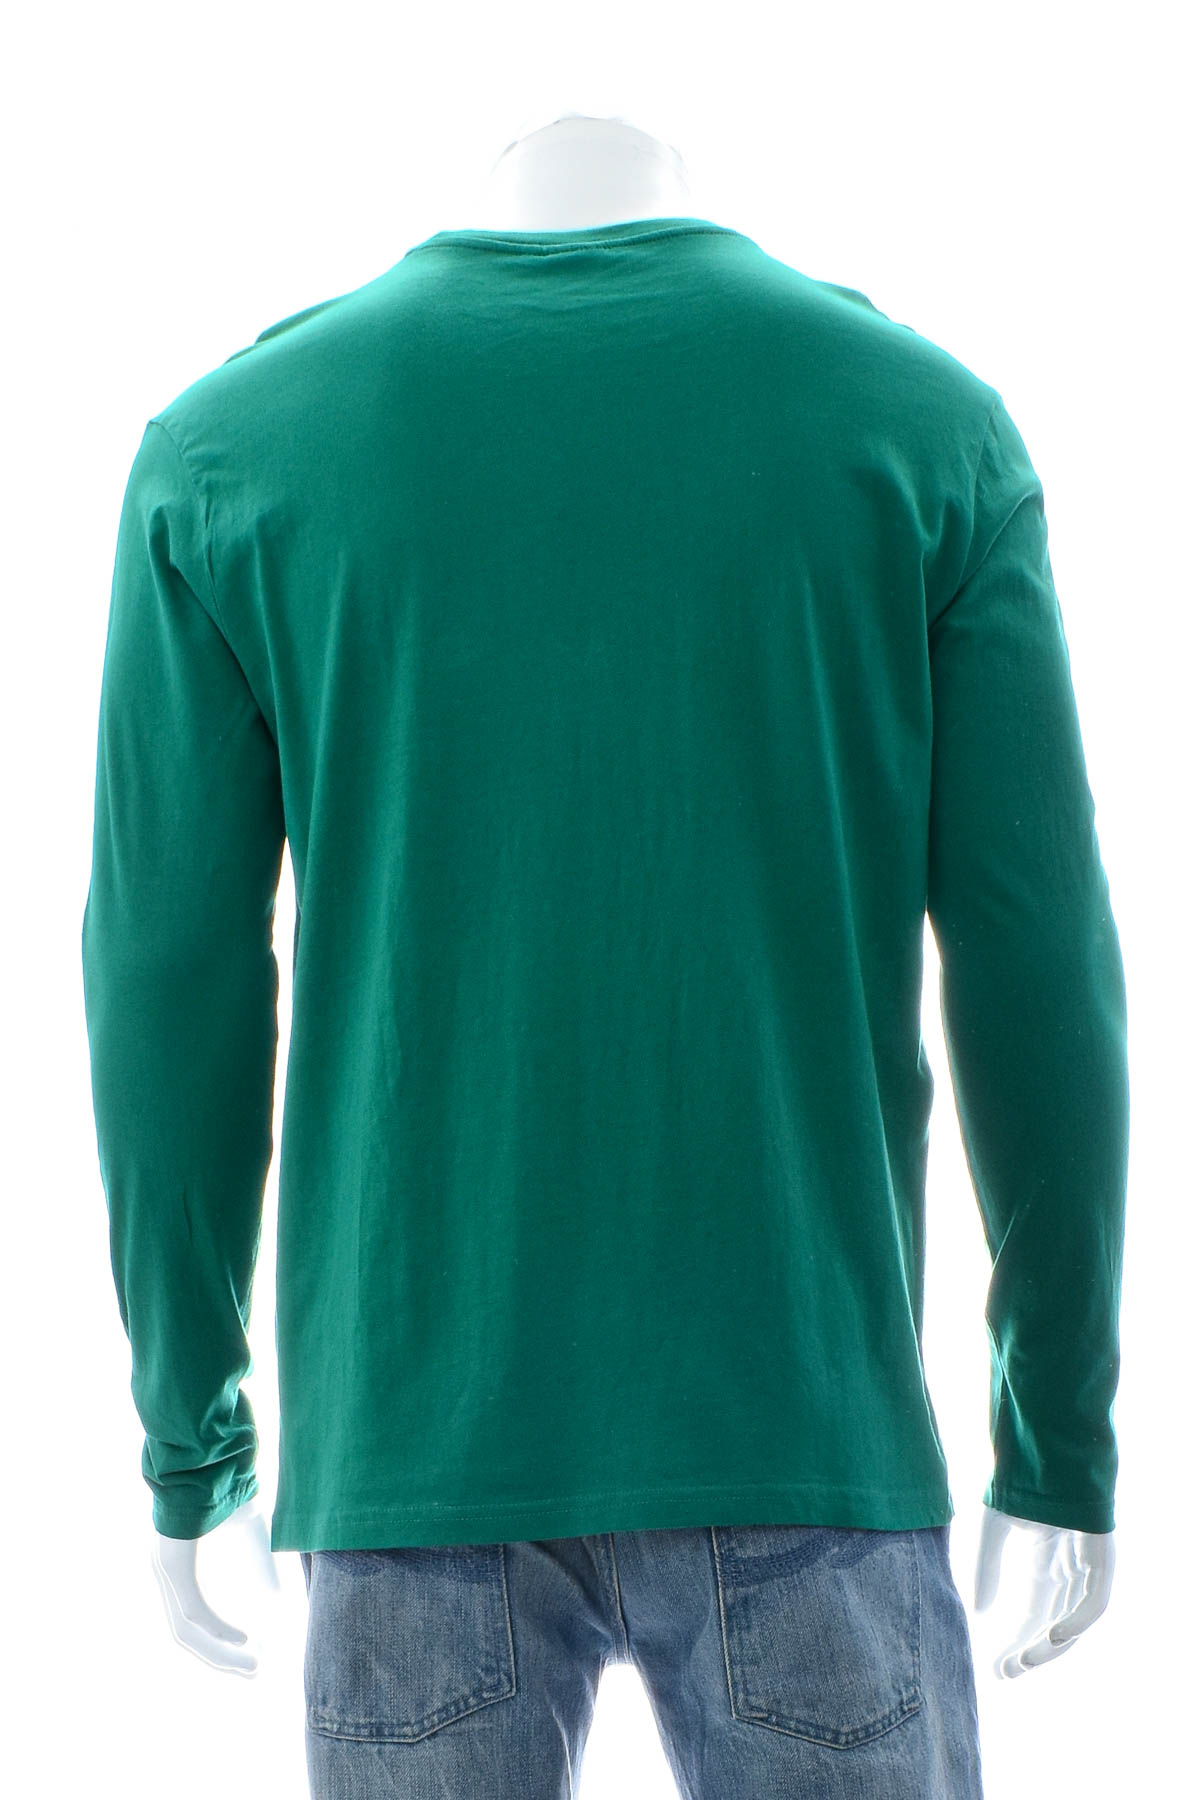 Ανδρική μπλούζα - Briatore - 1